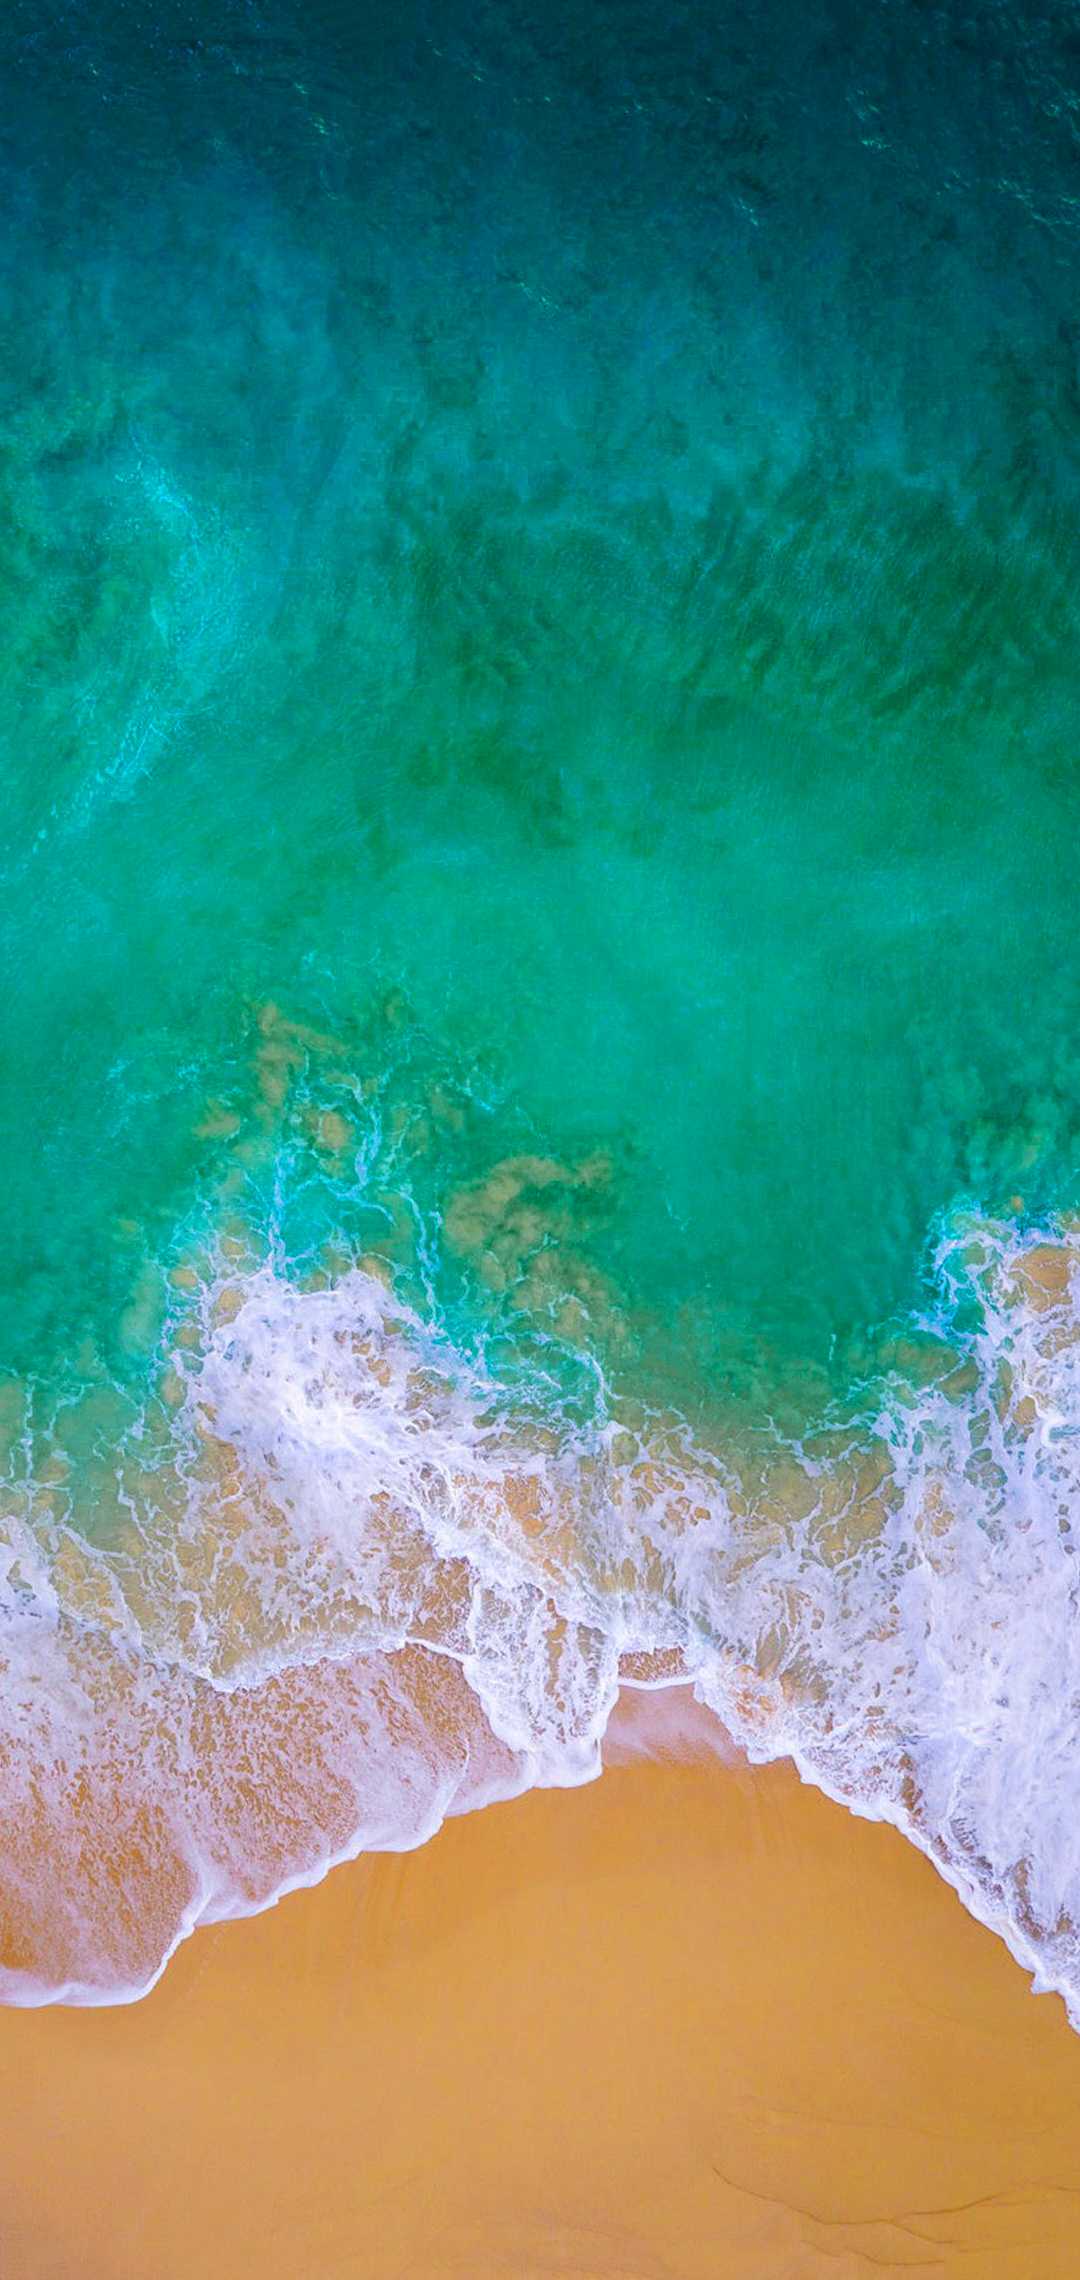 Ocean Background - iXpap